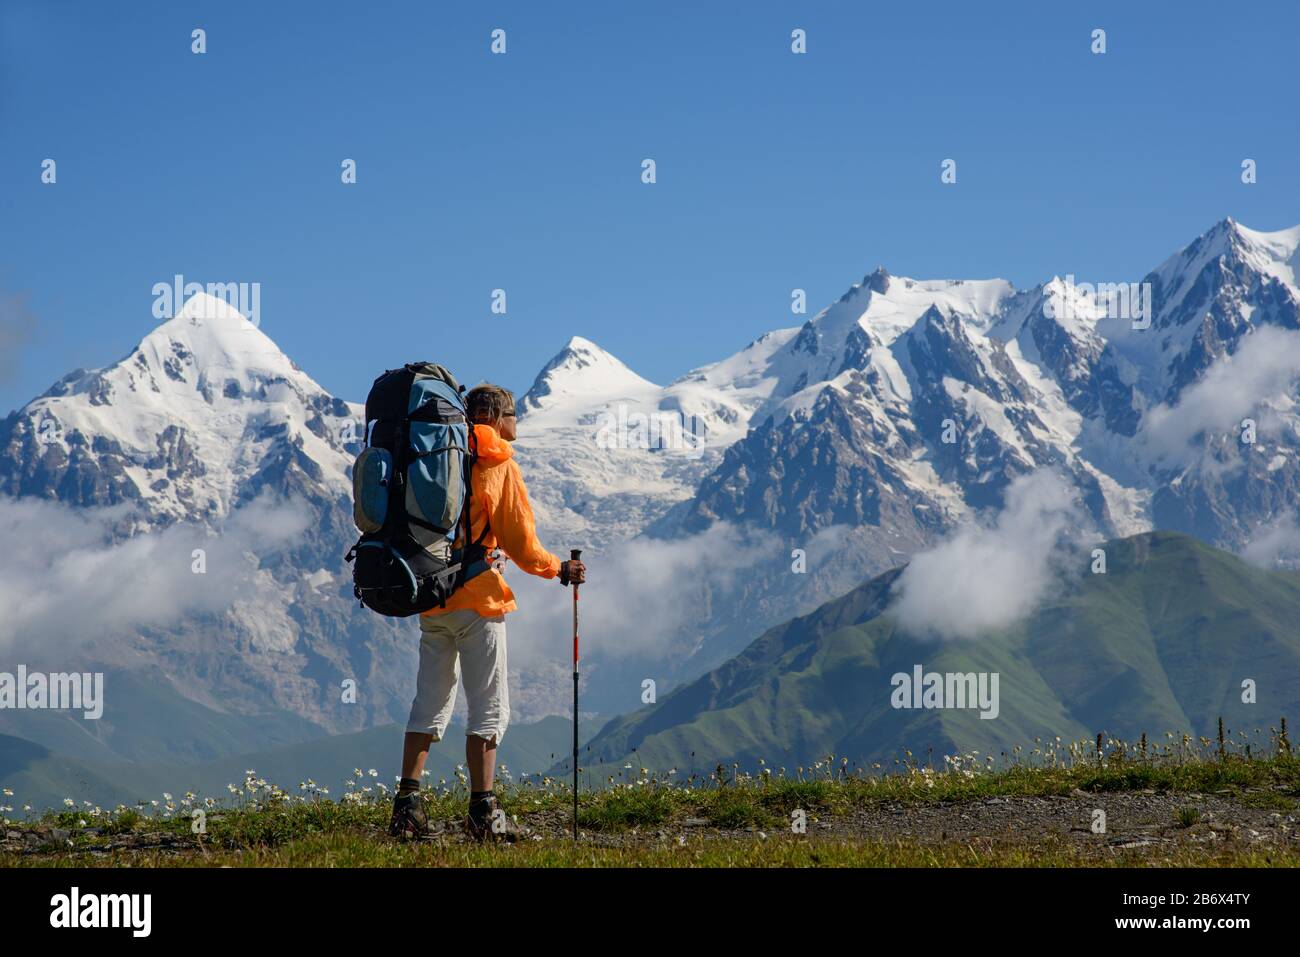 Frau (Backpacker) mit Sonnenbrille und Stöcken betrachtet schneebedeckte Berge. Touristen liegt auf der Alpenwiese. Stockfoto